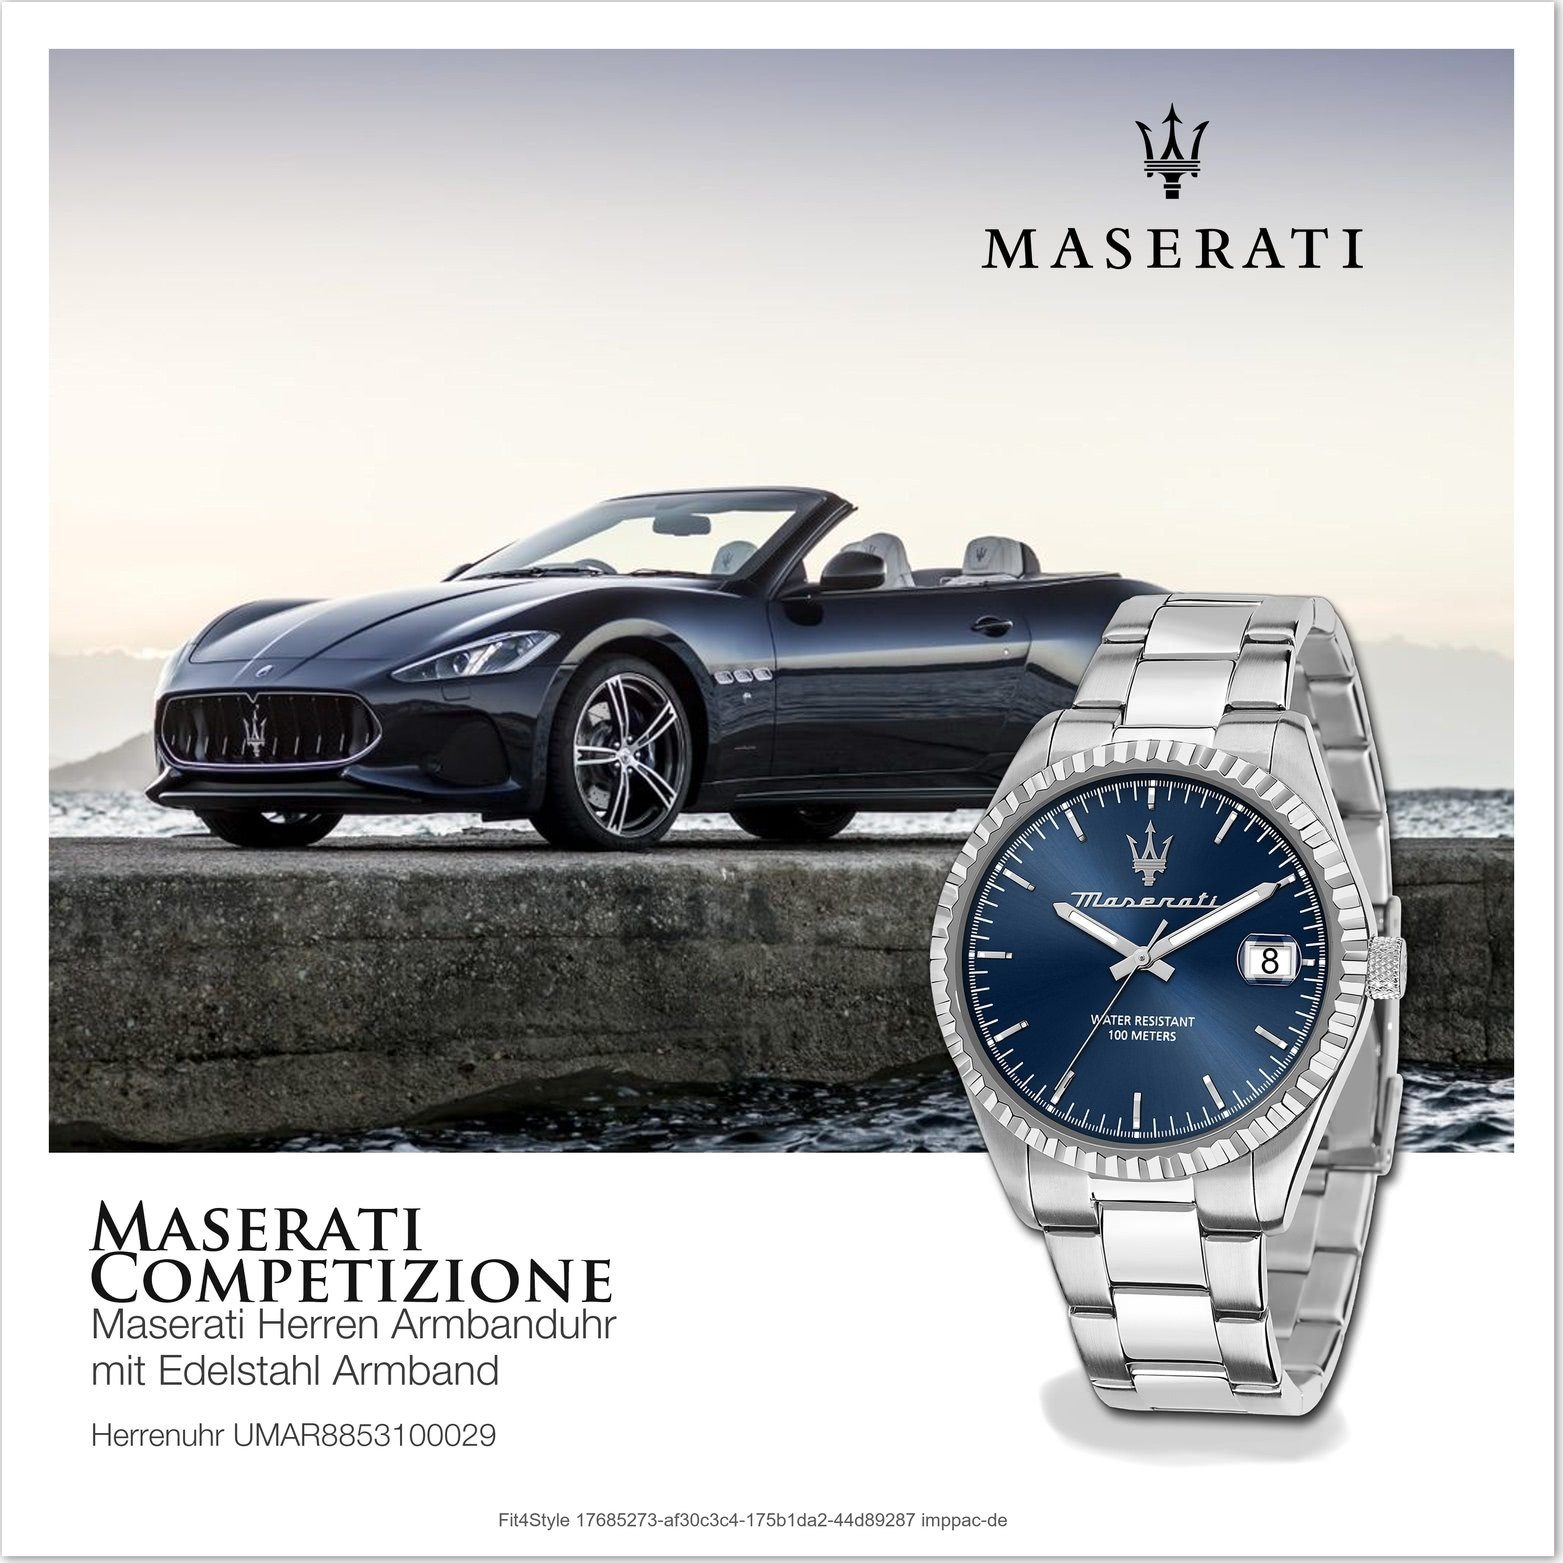 Maserati Edelstahlarmband, blau Herrenuhr rundes Edelstahl Gehäuse, Armband-Uhr, groß MASERATI (ca. Quarzuhr 43mm)